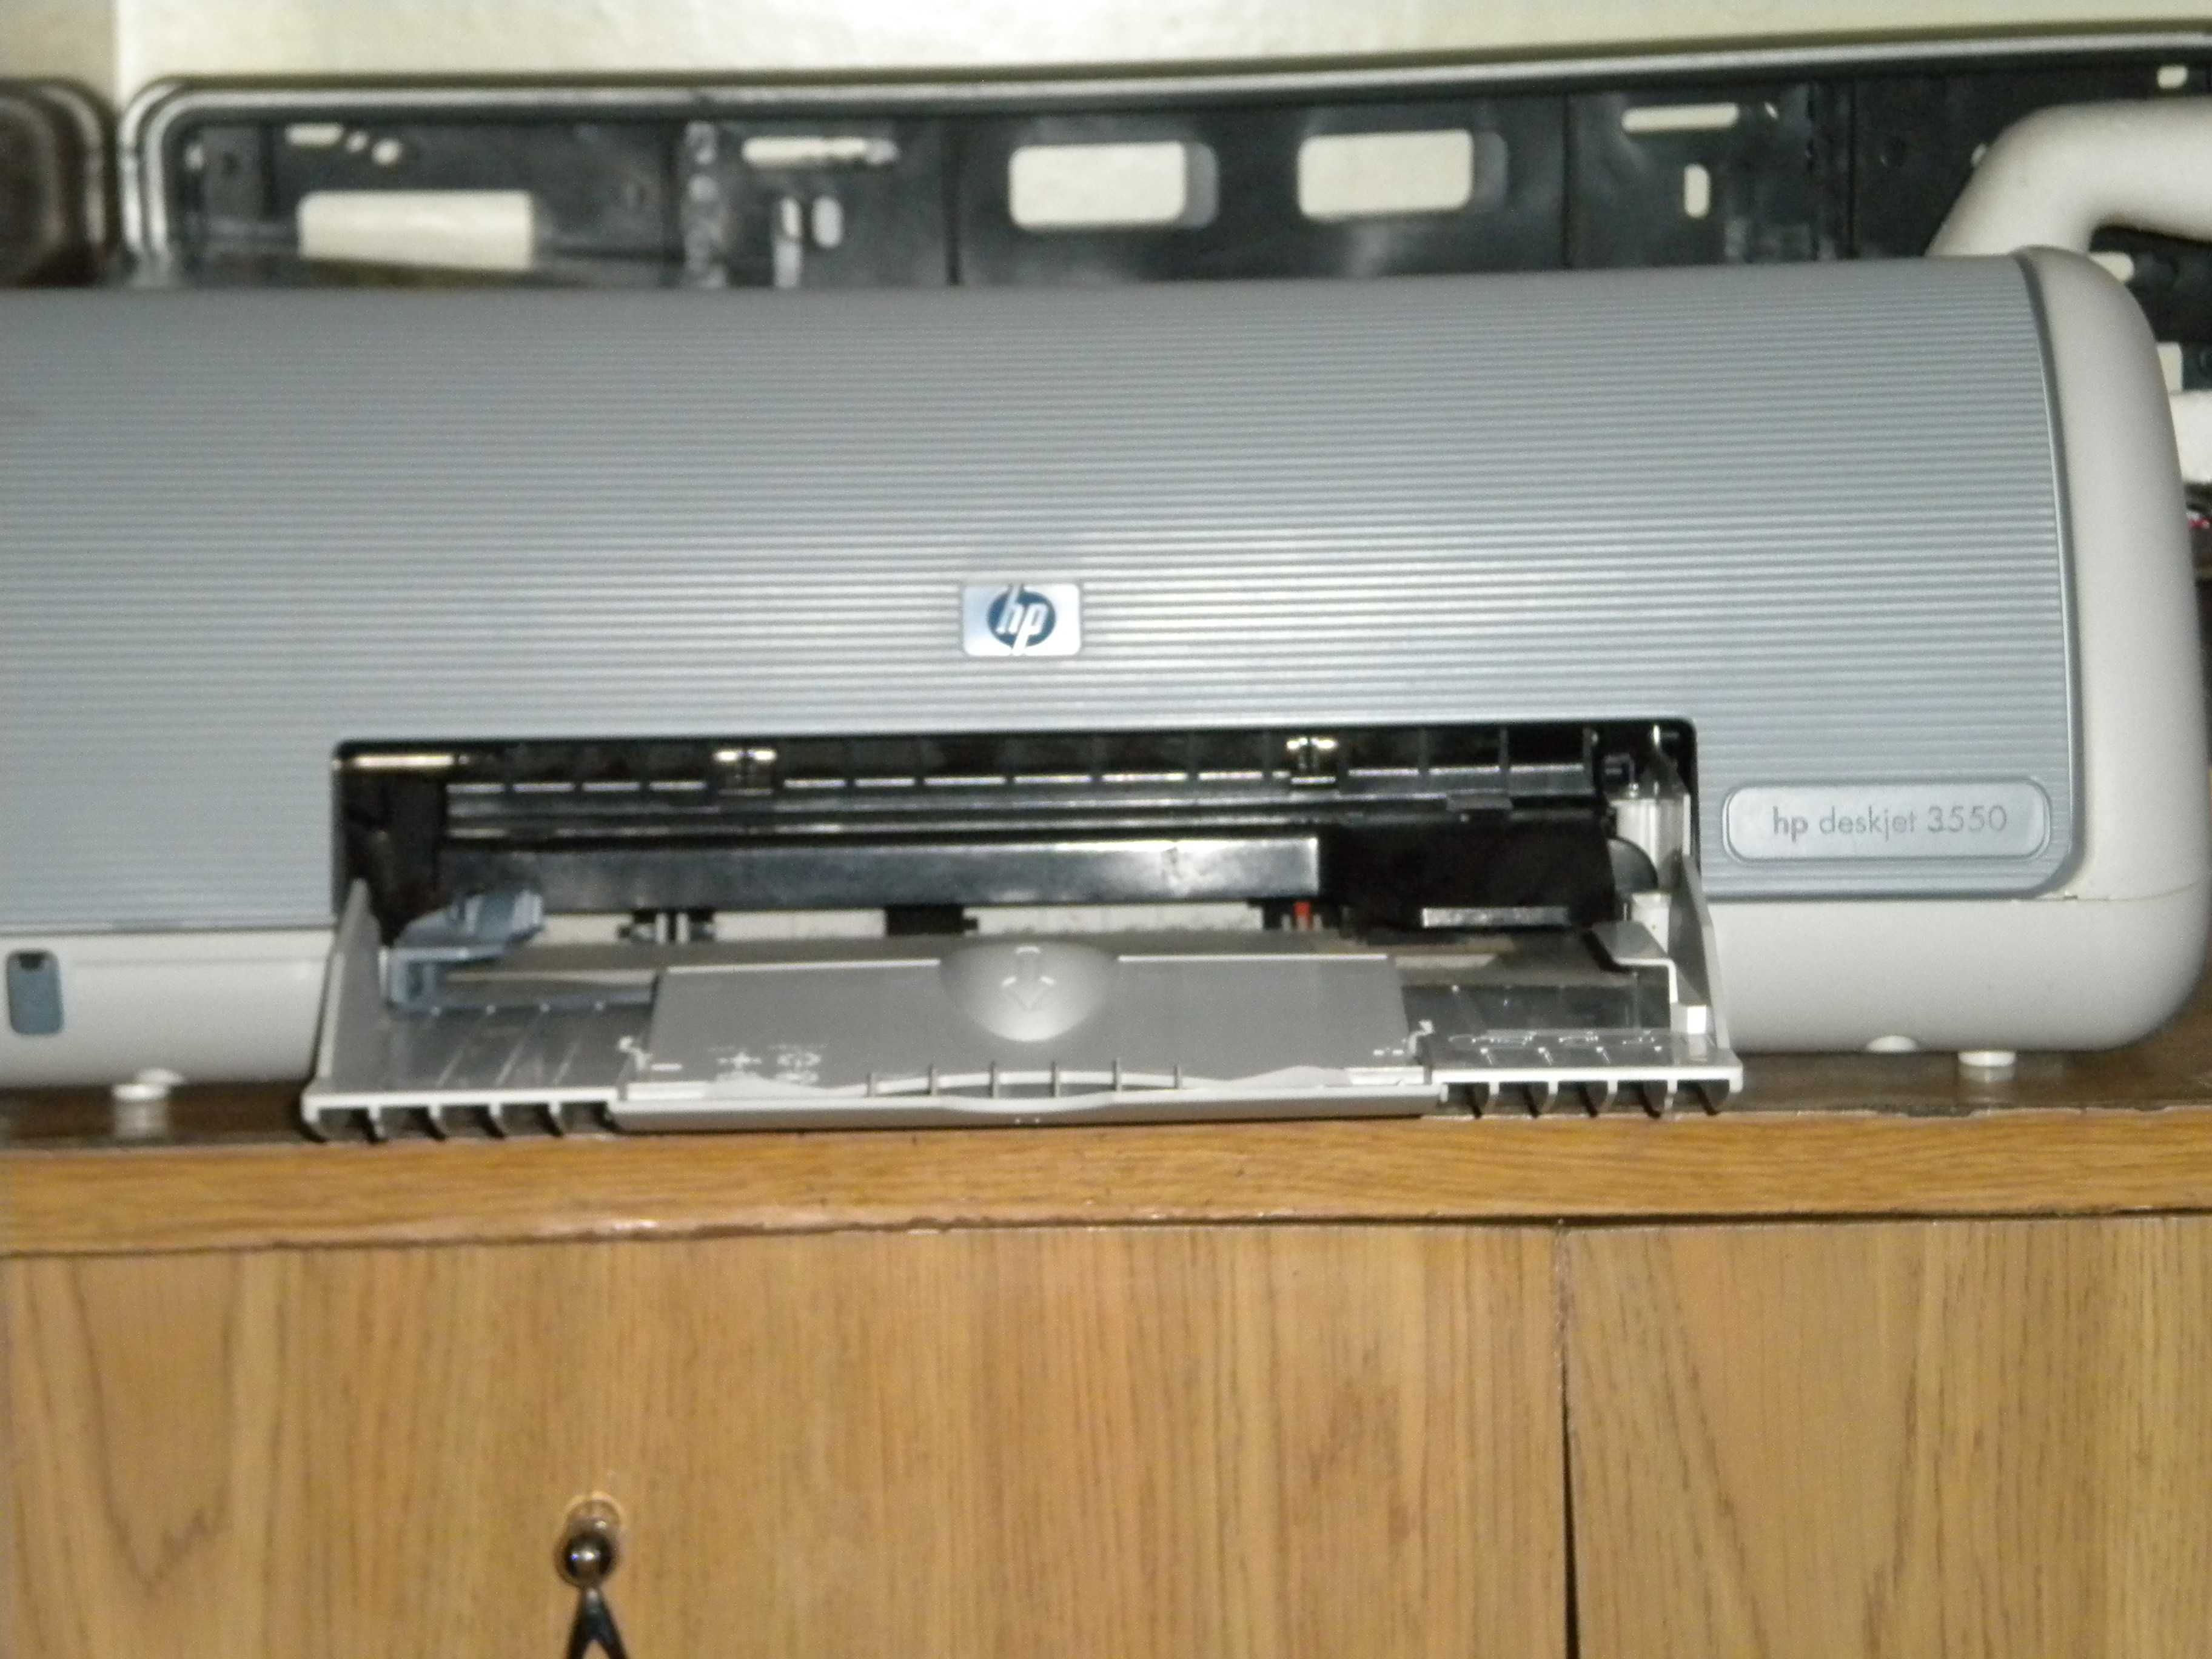 HP deskjet 3550 kolorowa drukarka